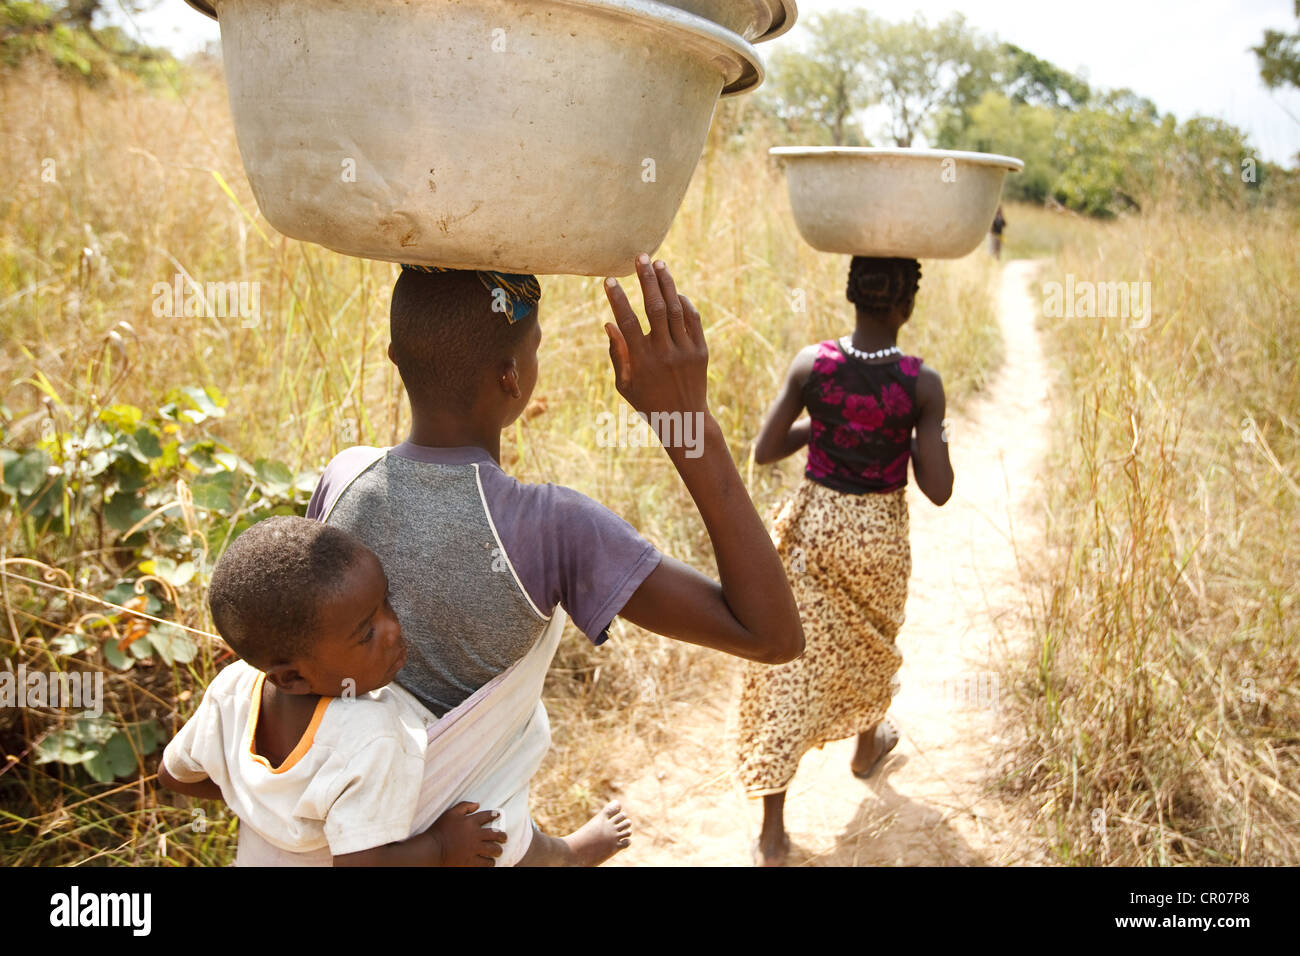 Kambou Koheva, 21 (sinistra) e Kambou Tangba, 17, a piedi lungo un percorso come loro capo al campo di lavoro nel villaggio di Kirkpadouo Foto Stock